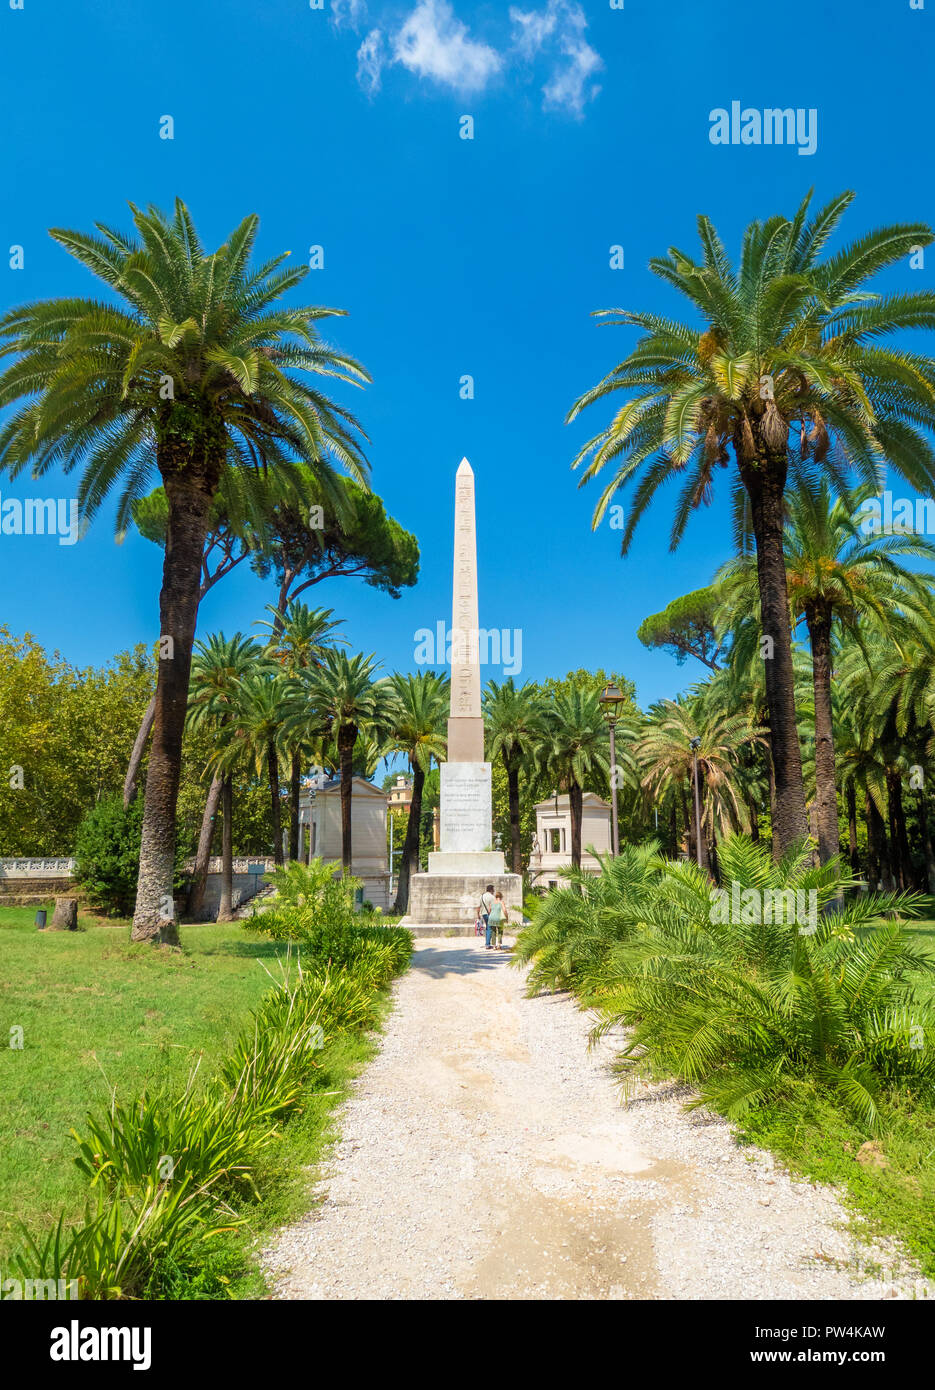 Rome, Italie - une vue de la Villa Torlonia, parc public de Rome avec des fontaines, bâtiments néoclassiques, musée et jardins environnants Banque D'Images